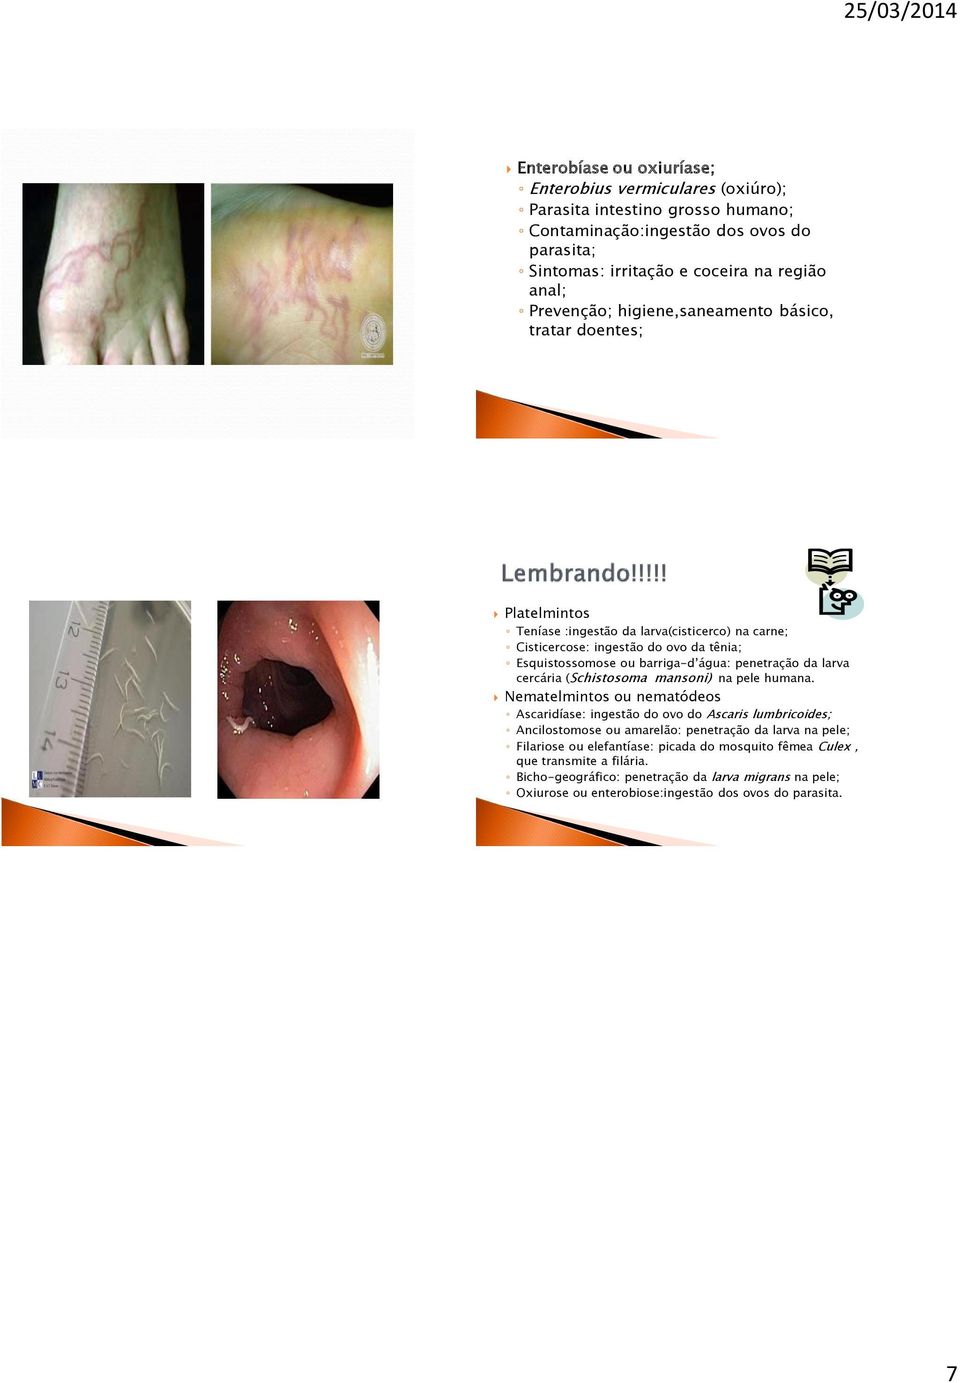 penetração da larva cercária (Schistosoma mansoni) na pele humana.